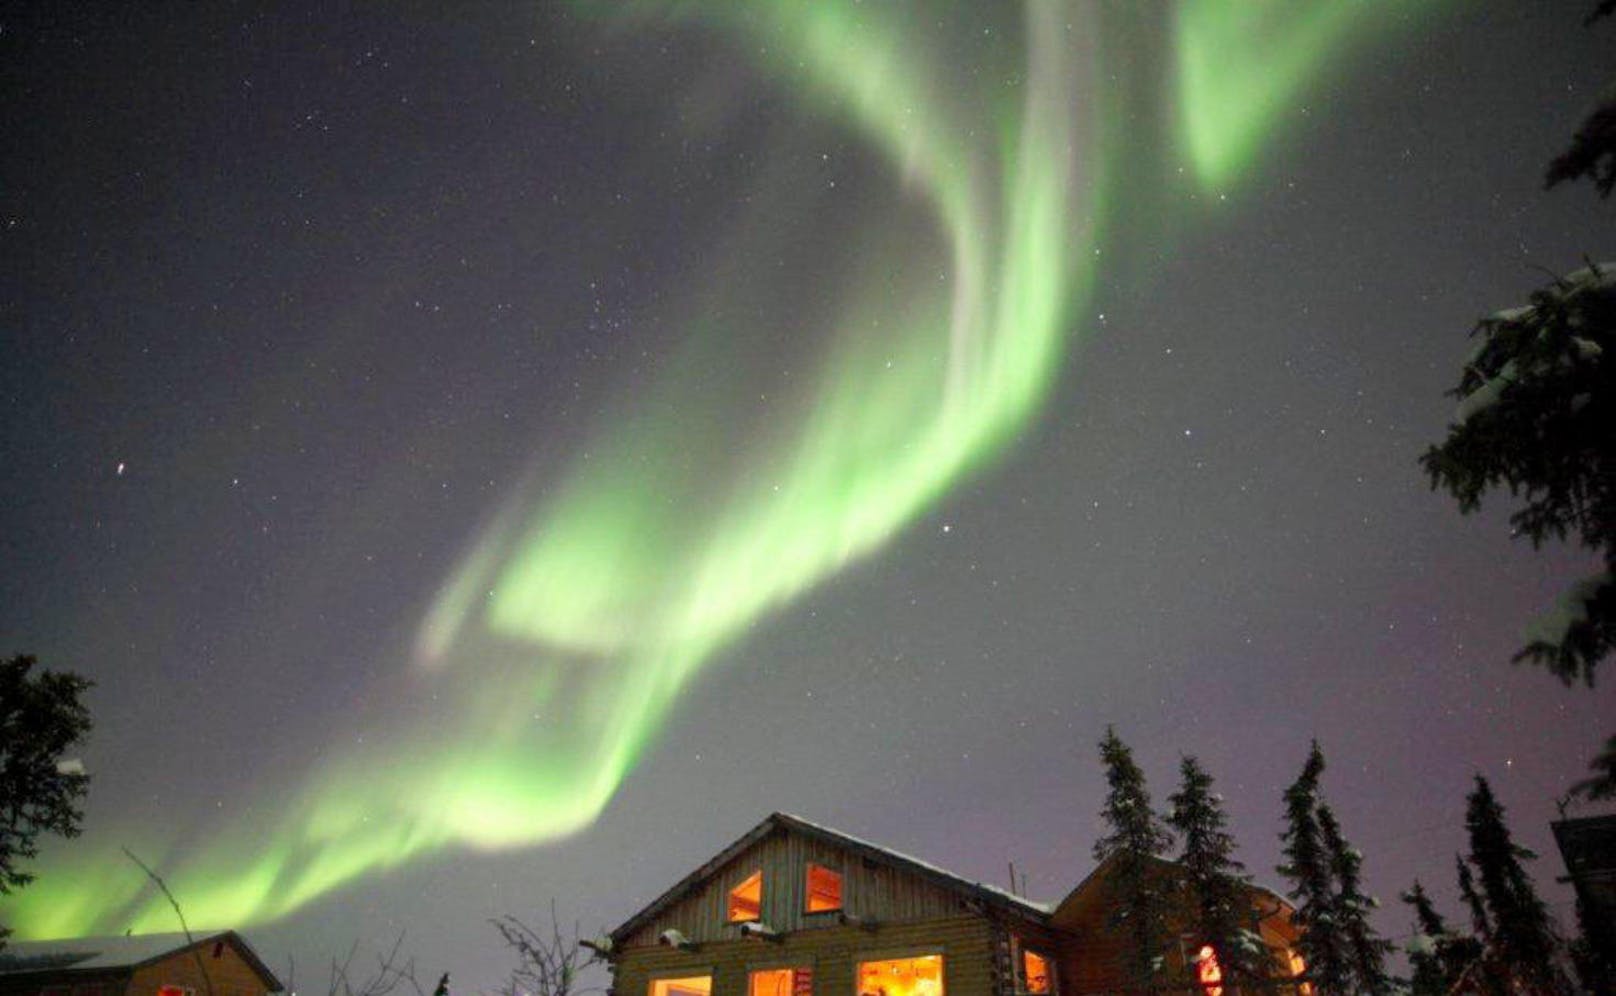 Auch in Alaska leuchtet der Himmel. Ein guter Spot für Polarlichter-Fans ist die Aurora Borealis Lodge nahe Fairbanks, wo der Name Programm ist. Die grossen, gegen Norden ausgerichteten Fenster der Zimmer bieten optimale Bedingungen, um die tanzenden Himmelslichter in der Wärme geniessen zu können. <a href="http://auroracabin.com/">auroracabin.com</a>